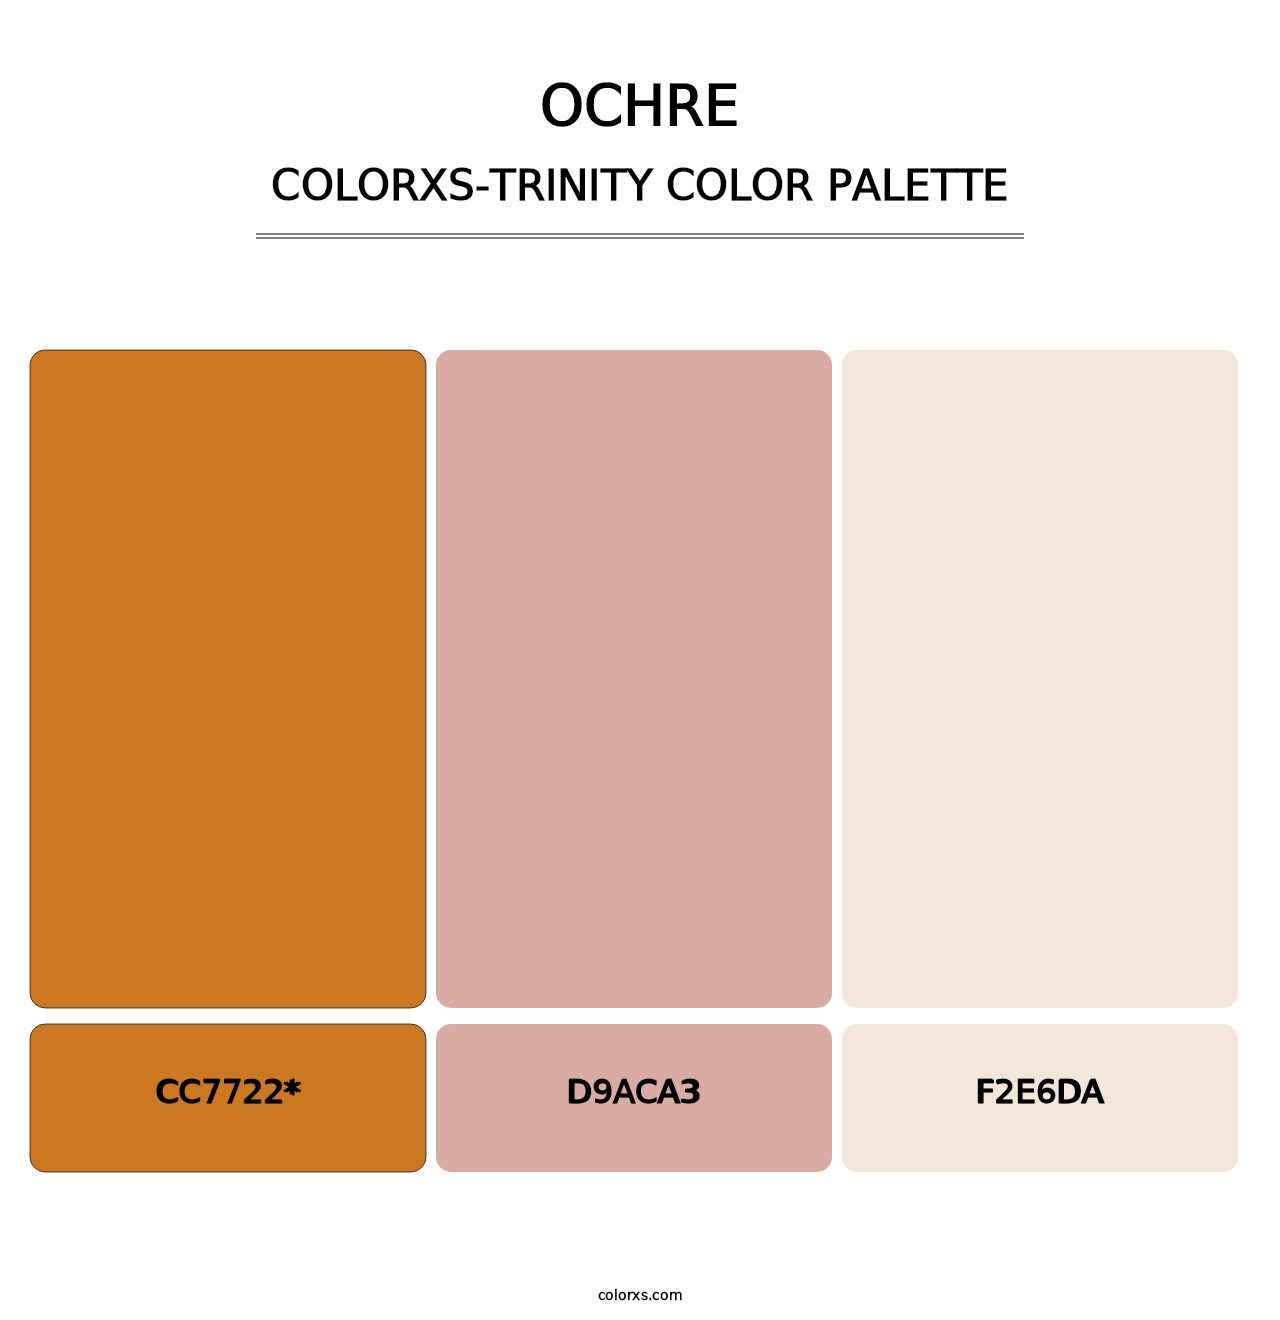 Ochre - Colorxs Trinity Palette